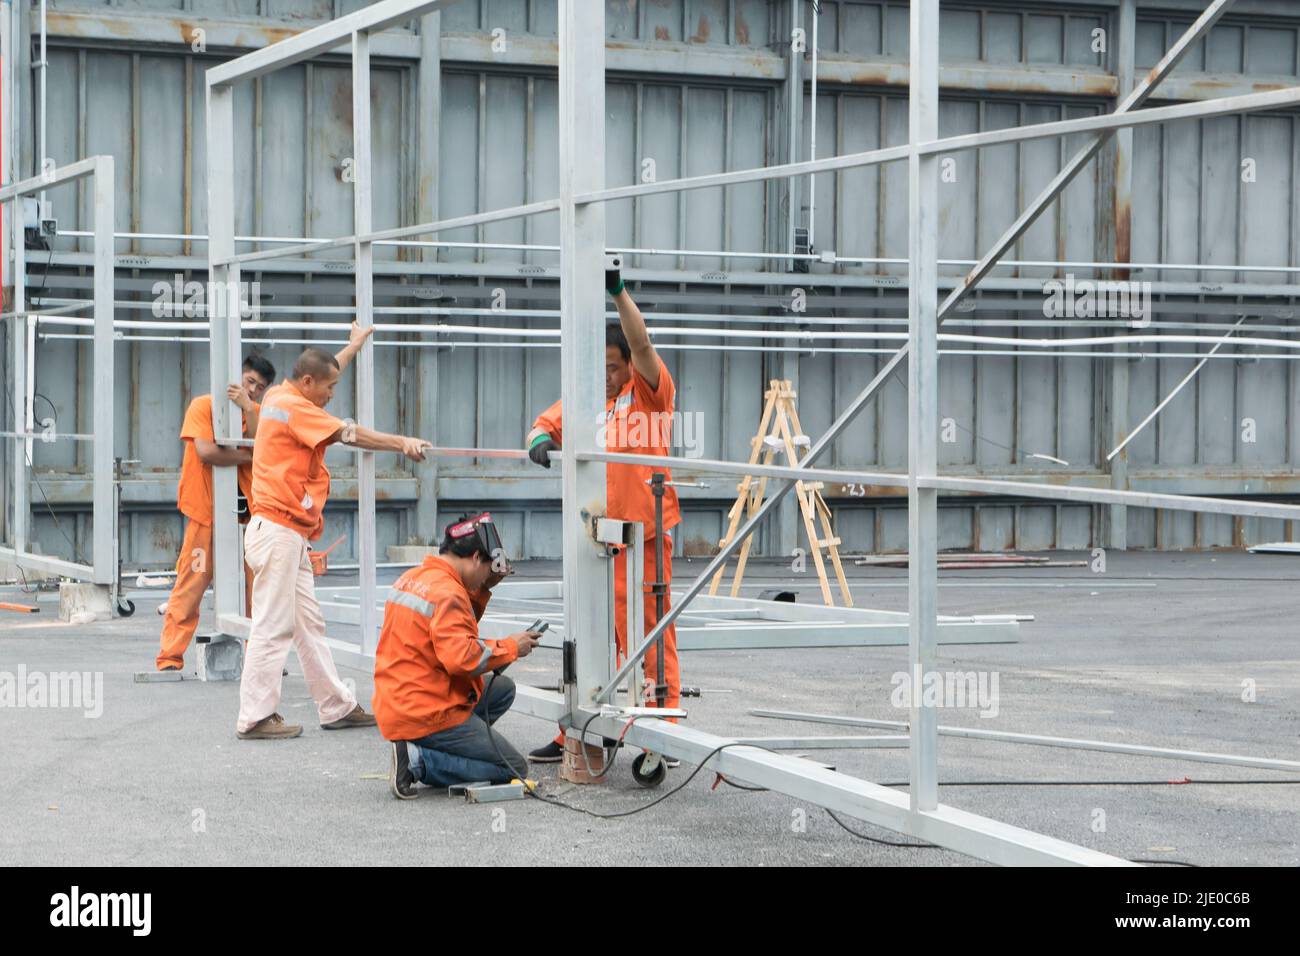 Eine Gruppe chinesischer Bauarbeiter arbeiten zusammen, um eine Stahlkonstruktion eines Hangars durch Schweißen von Metallen zu montieren. Stockfoto